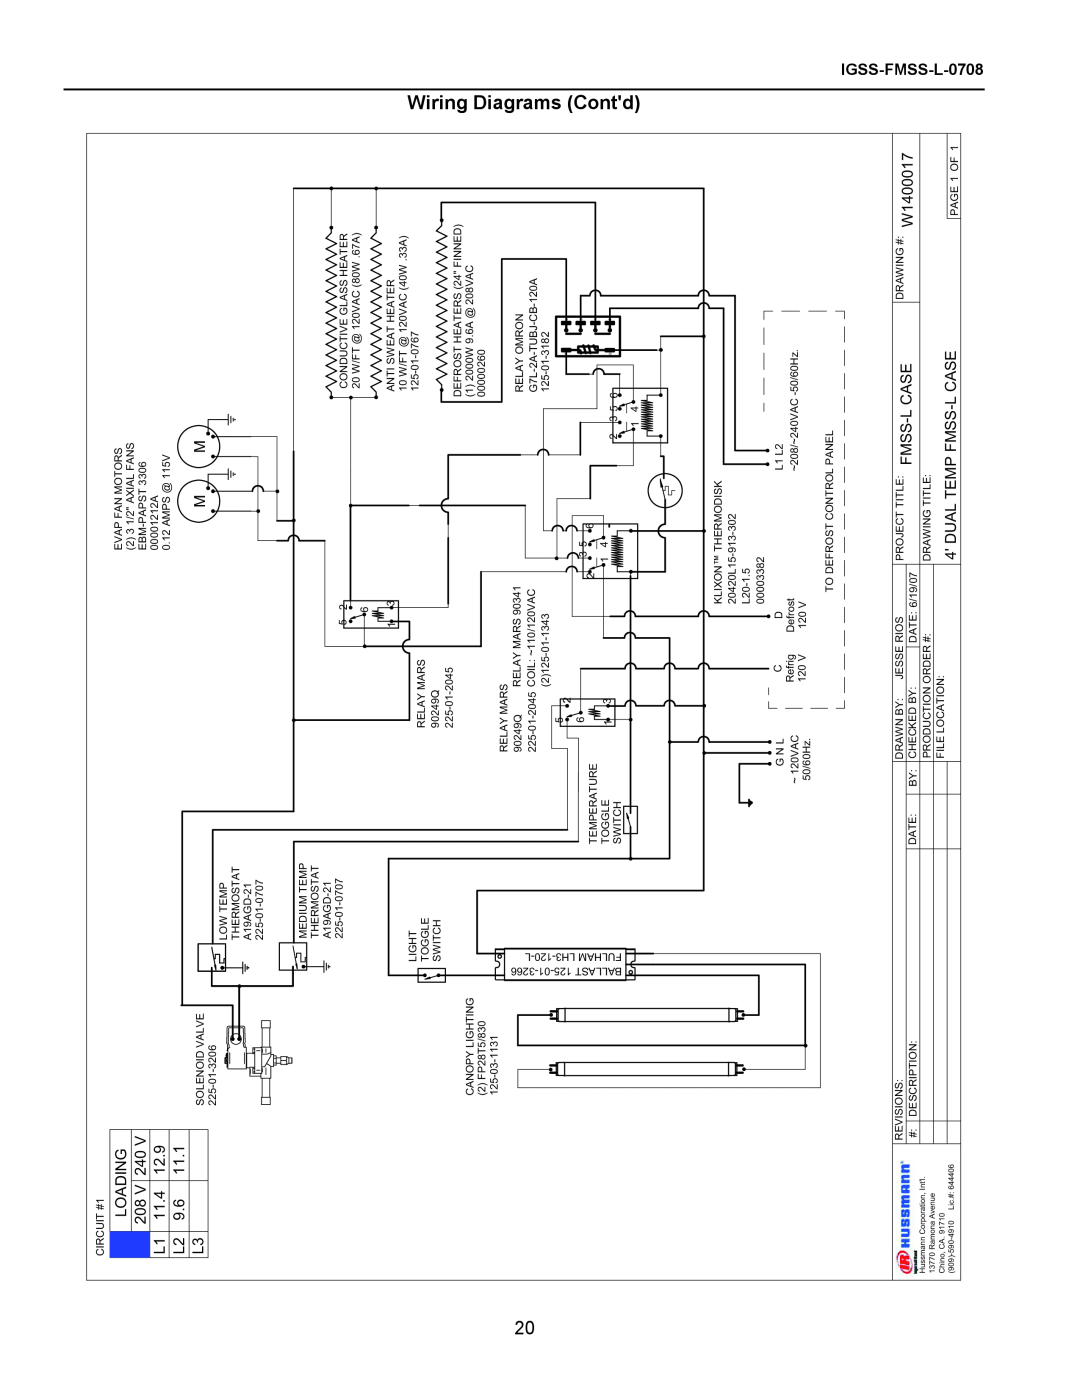 hussman Wiring Diagrams Contd, LOADING 208 V 240 L1 11.4 L2 9.6 L3, Dual Temp Fmss-L Case, IGSS-FMSS-L-0708 